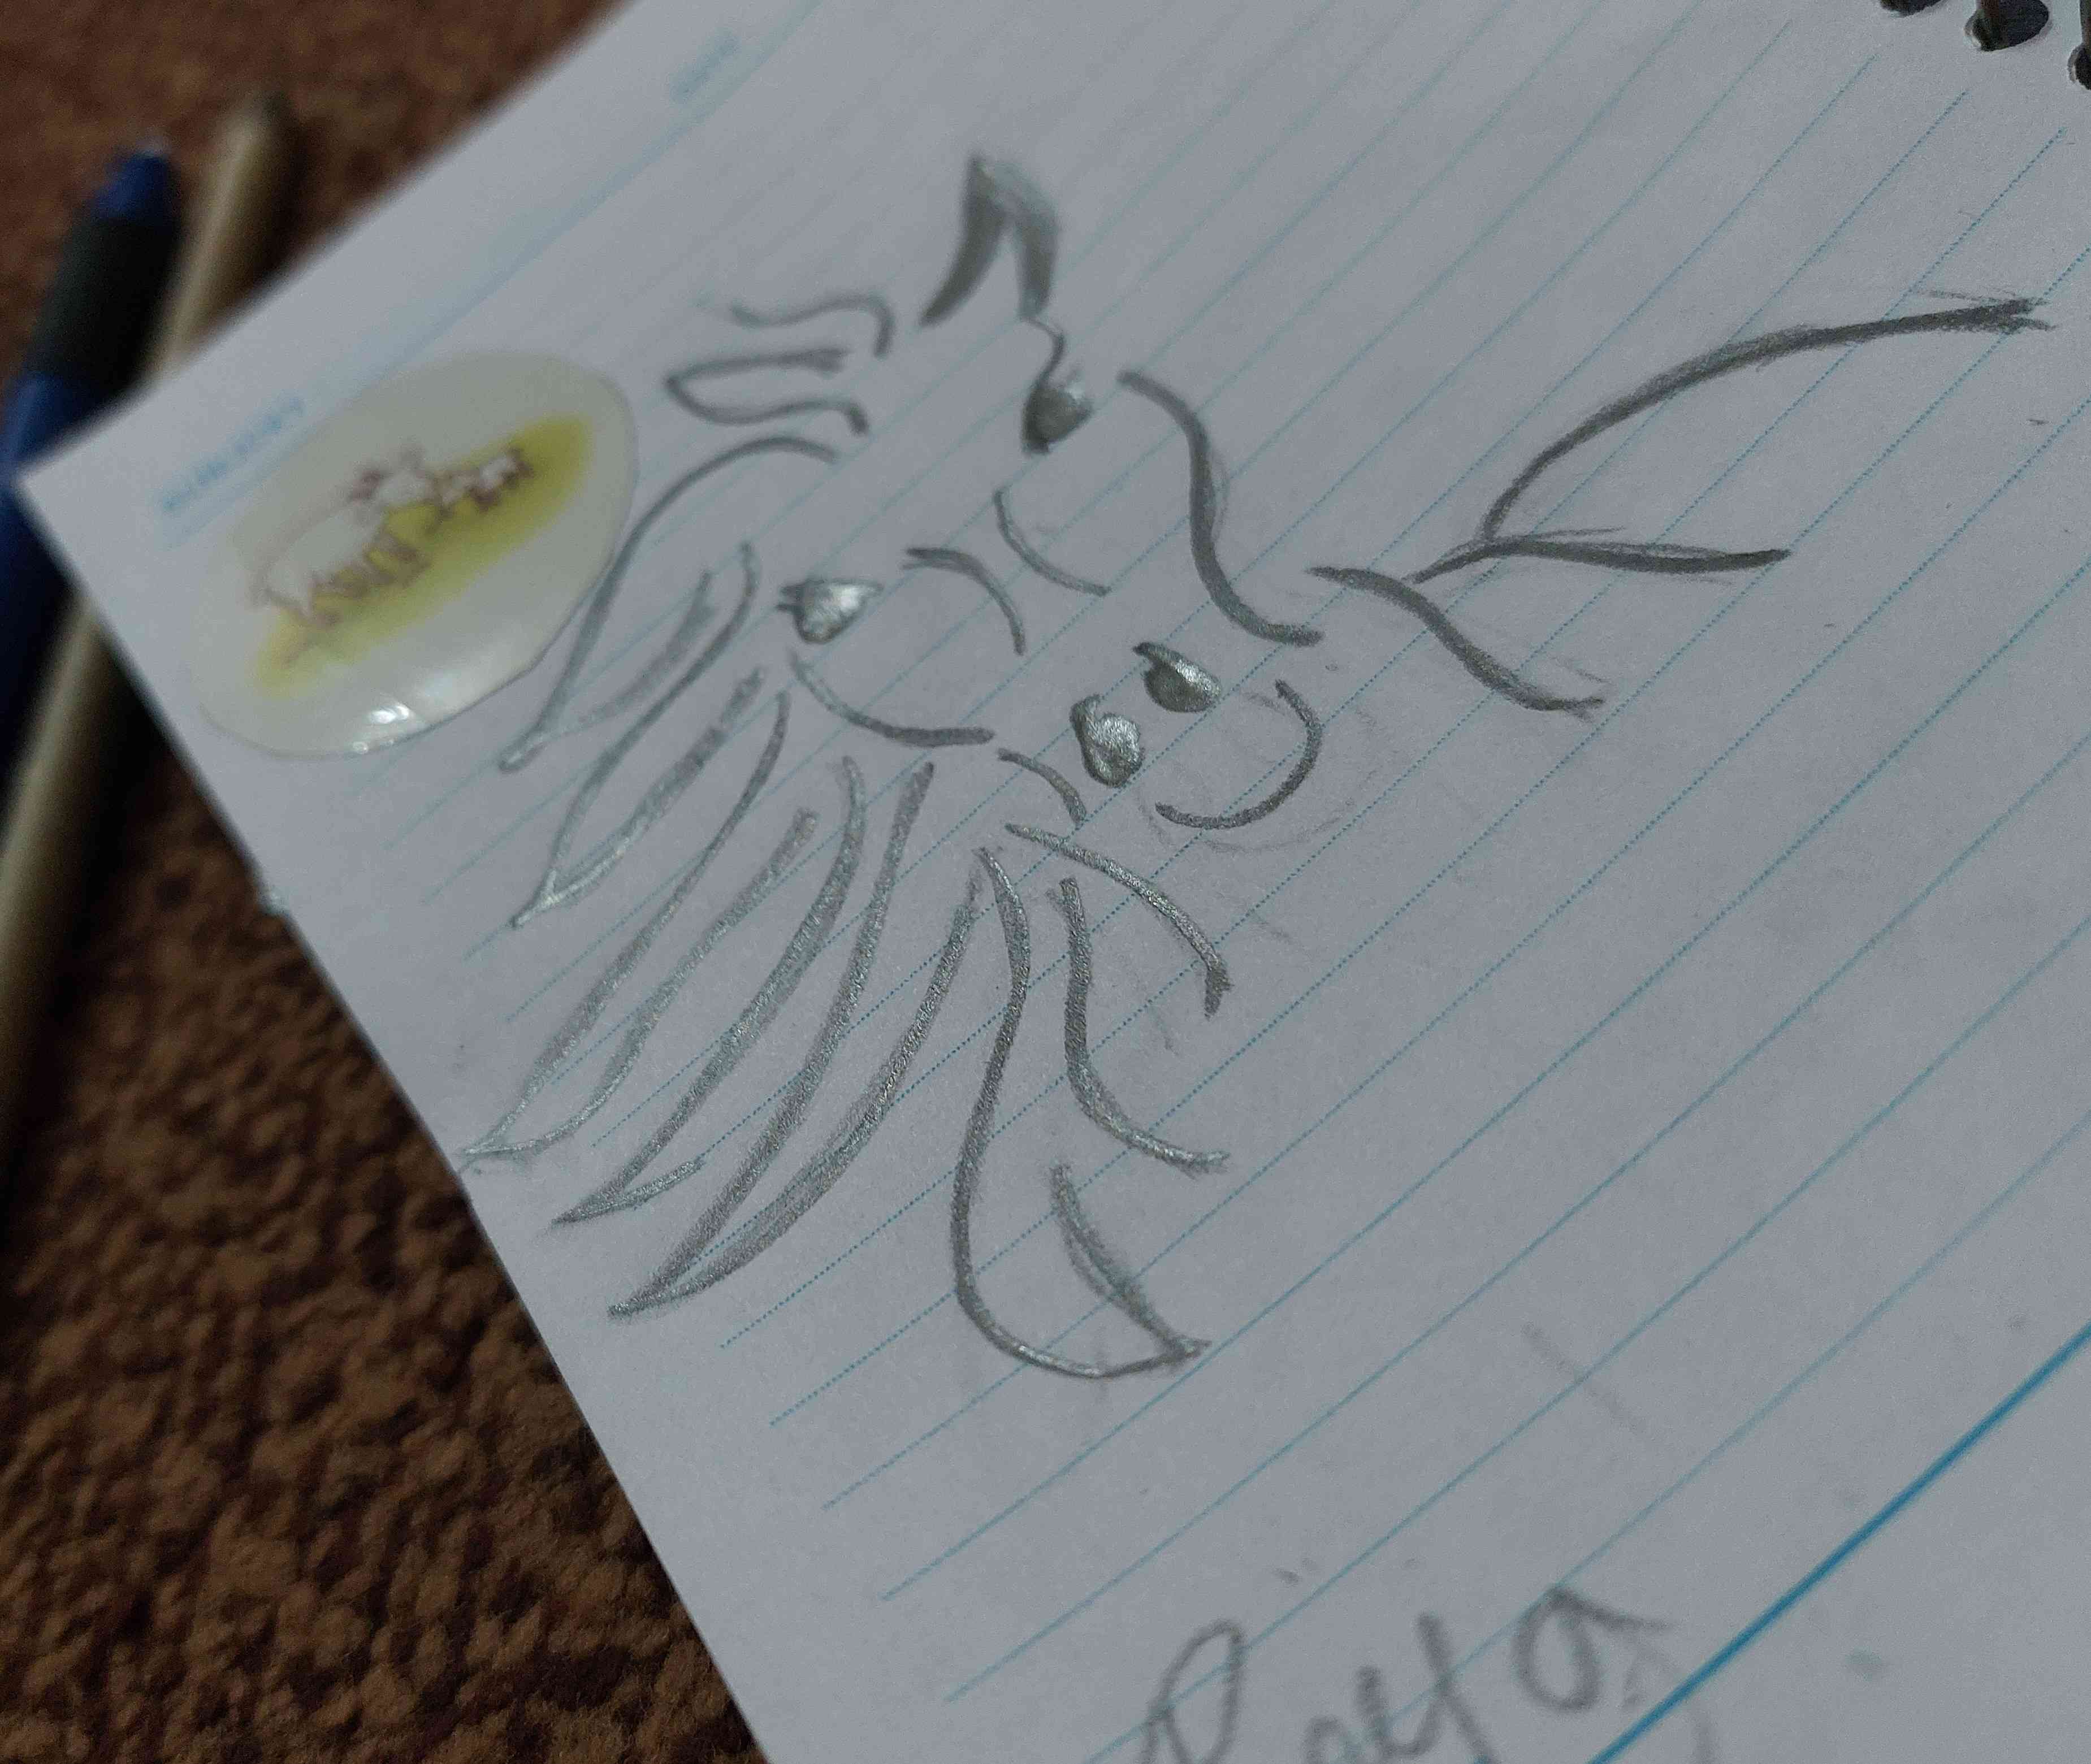 نقاشی مینیمال خطی اسب چطوره؟
نمونه های دیگه هم بزارم.
تاج میدم.